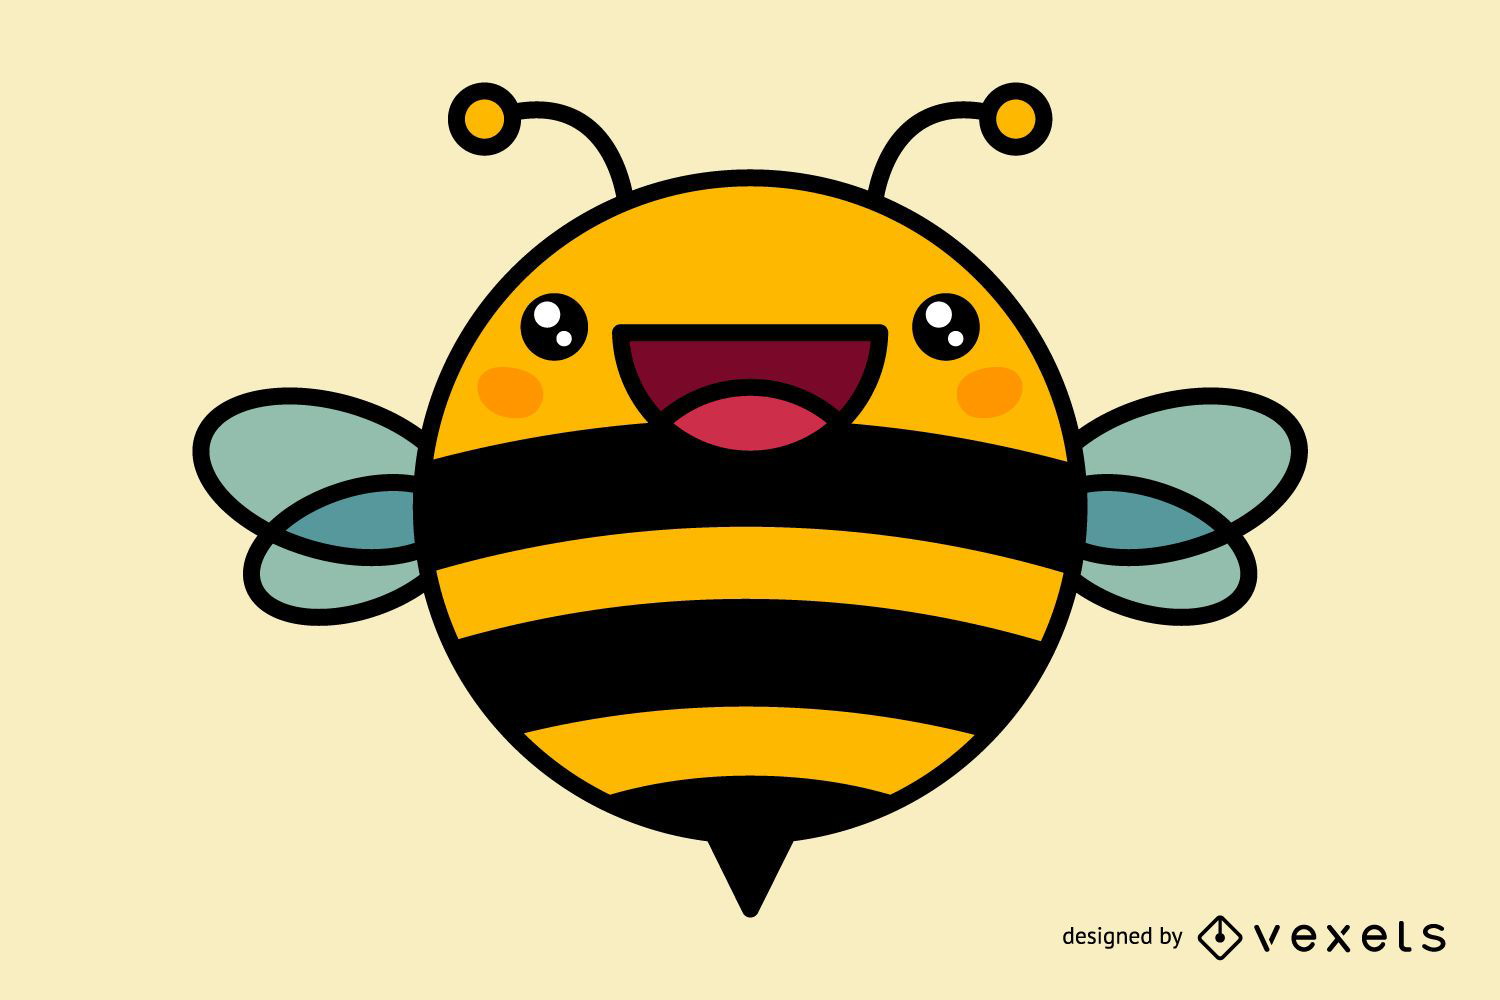 Honeycam · Baixar gratuíto · Criador GIF de Animação Muito Fácil